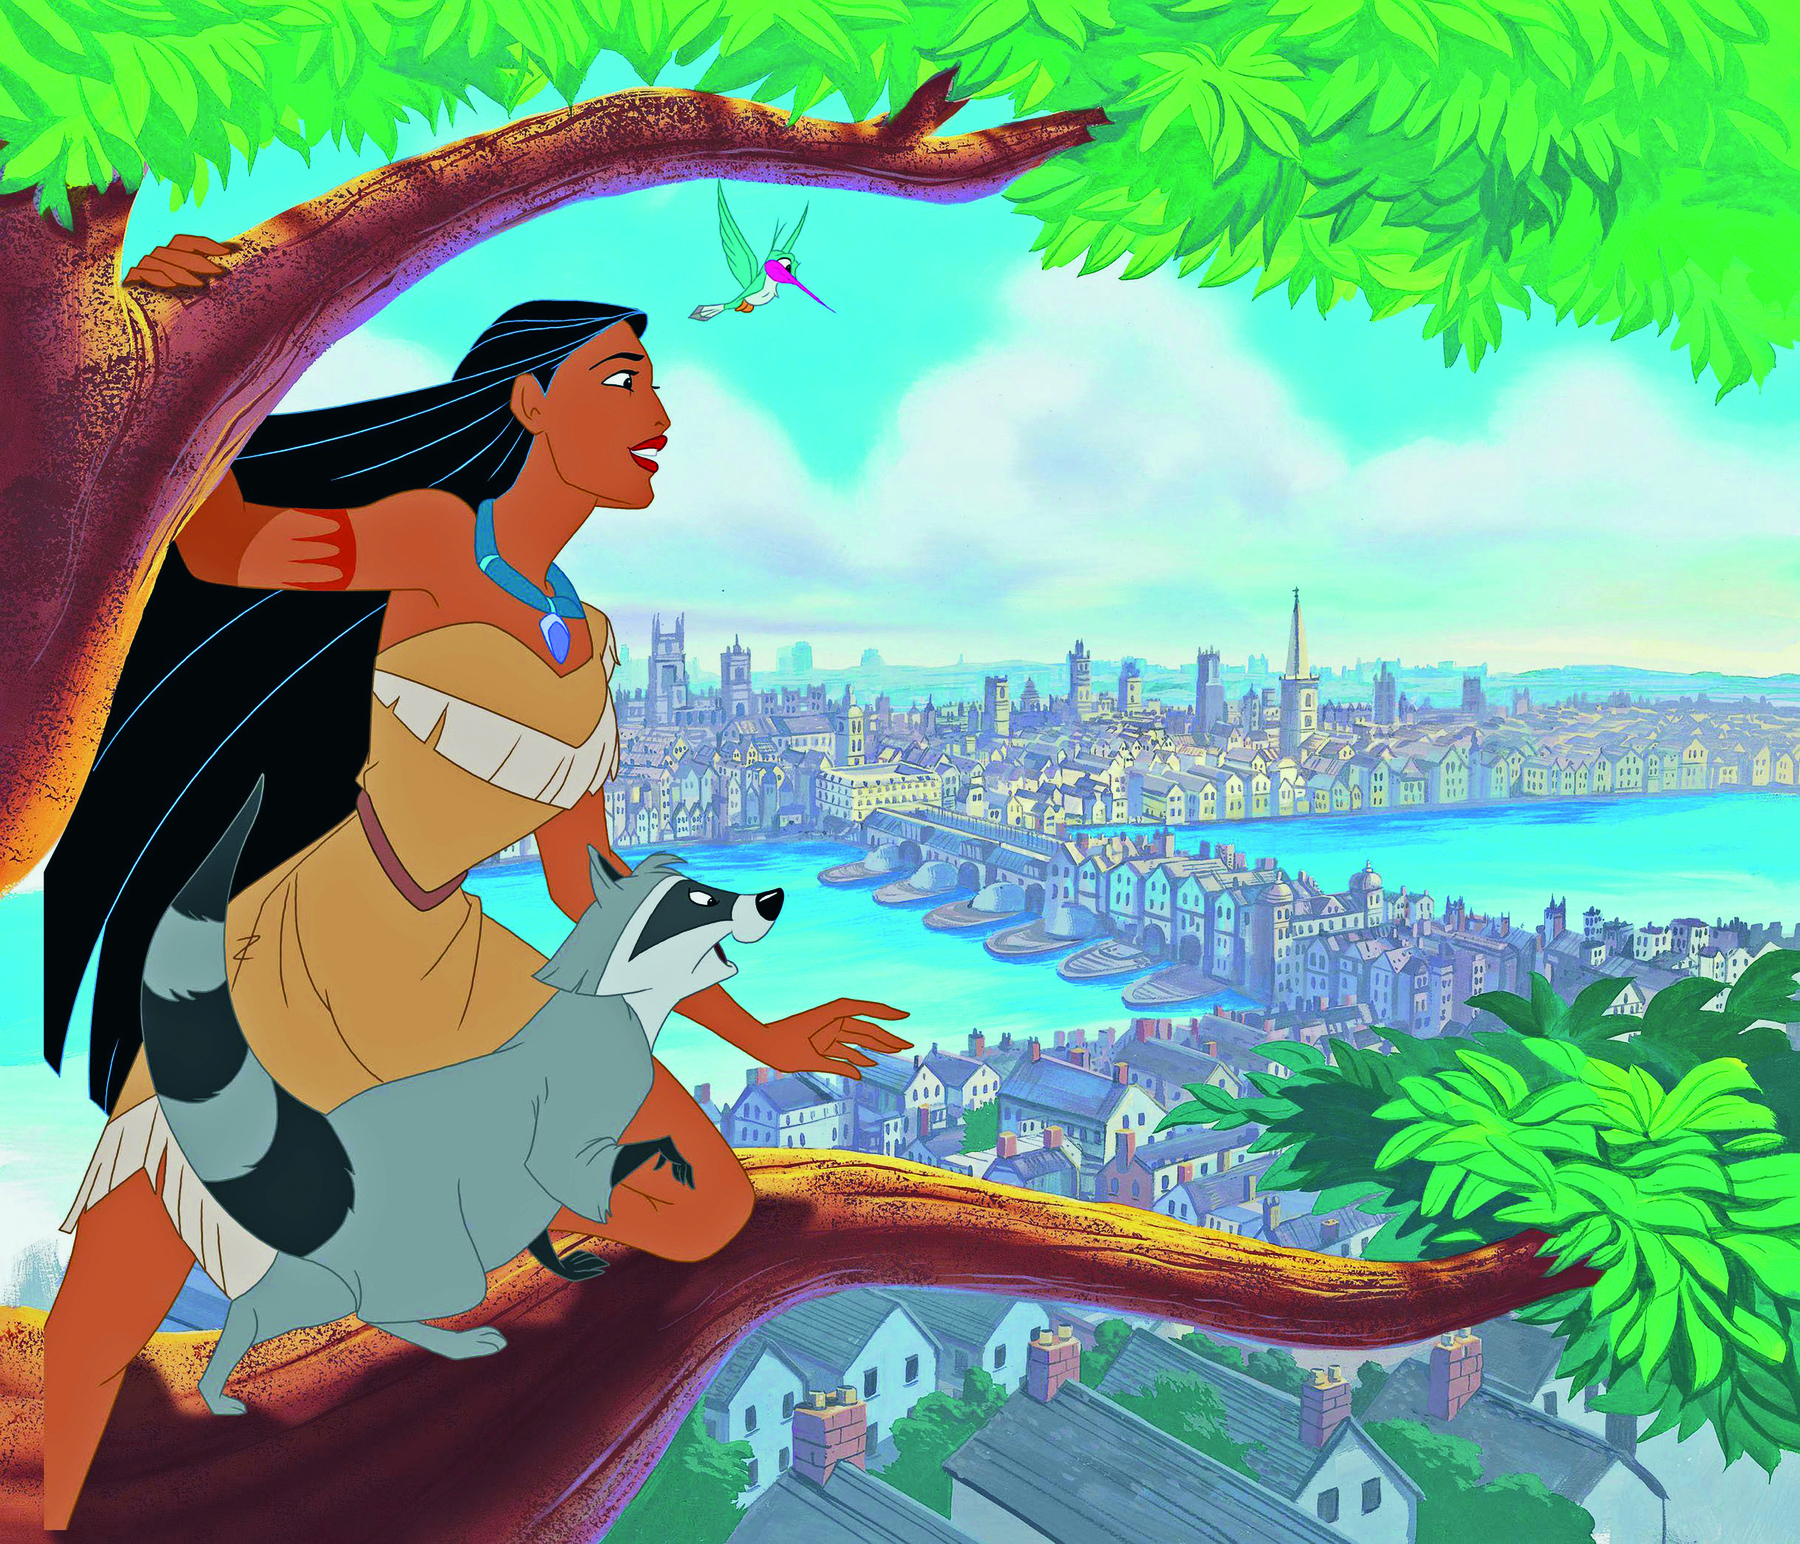 Cena do filme. Ilustração de mulher indígena, de cabelos escuros e longos, usando vestido bege e colar azul. Está sobre um galho de árvore ao lado de um guaxinim. Próximo a eles, um beija-flor. Todos observam uma grande cidade ao fundo, pela qual passa um grande rio.